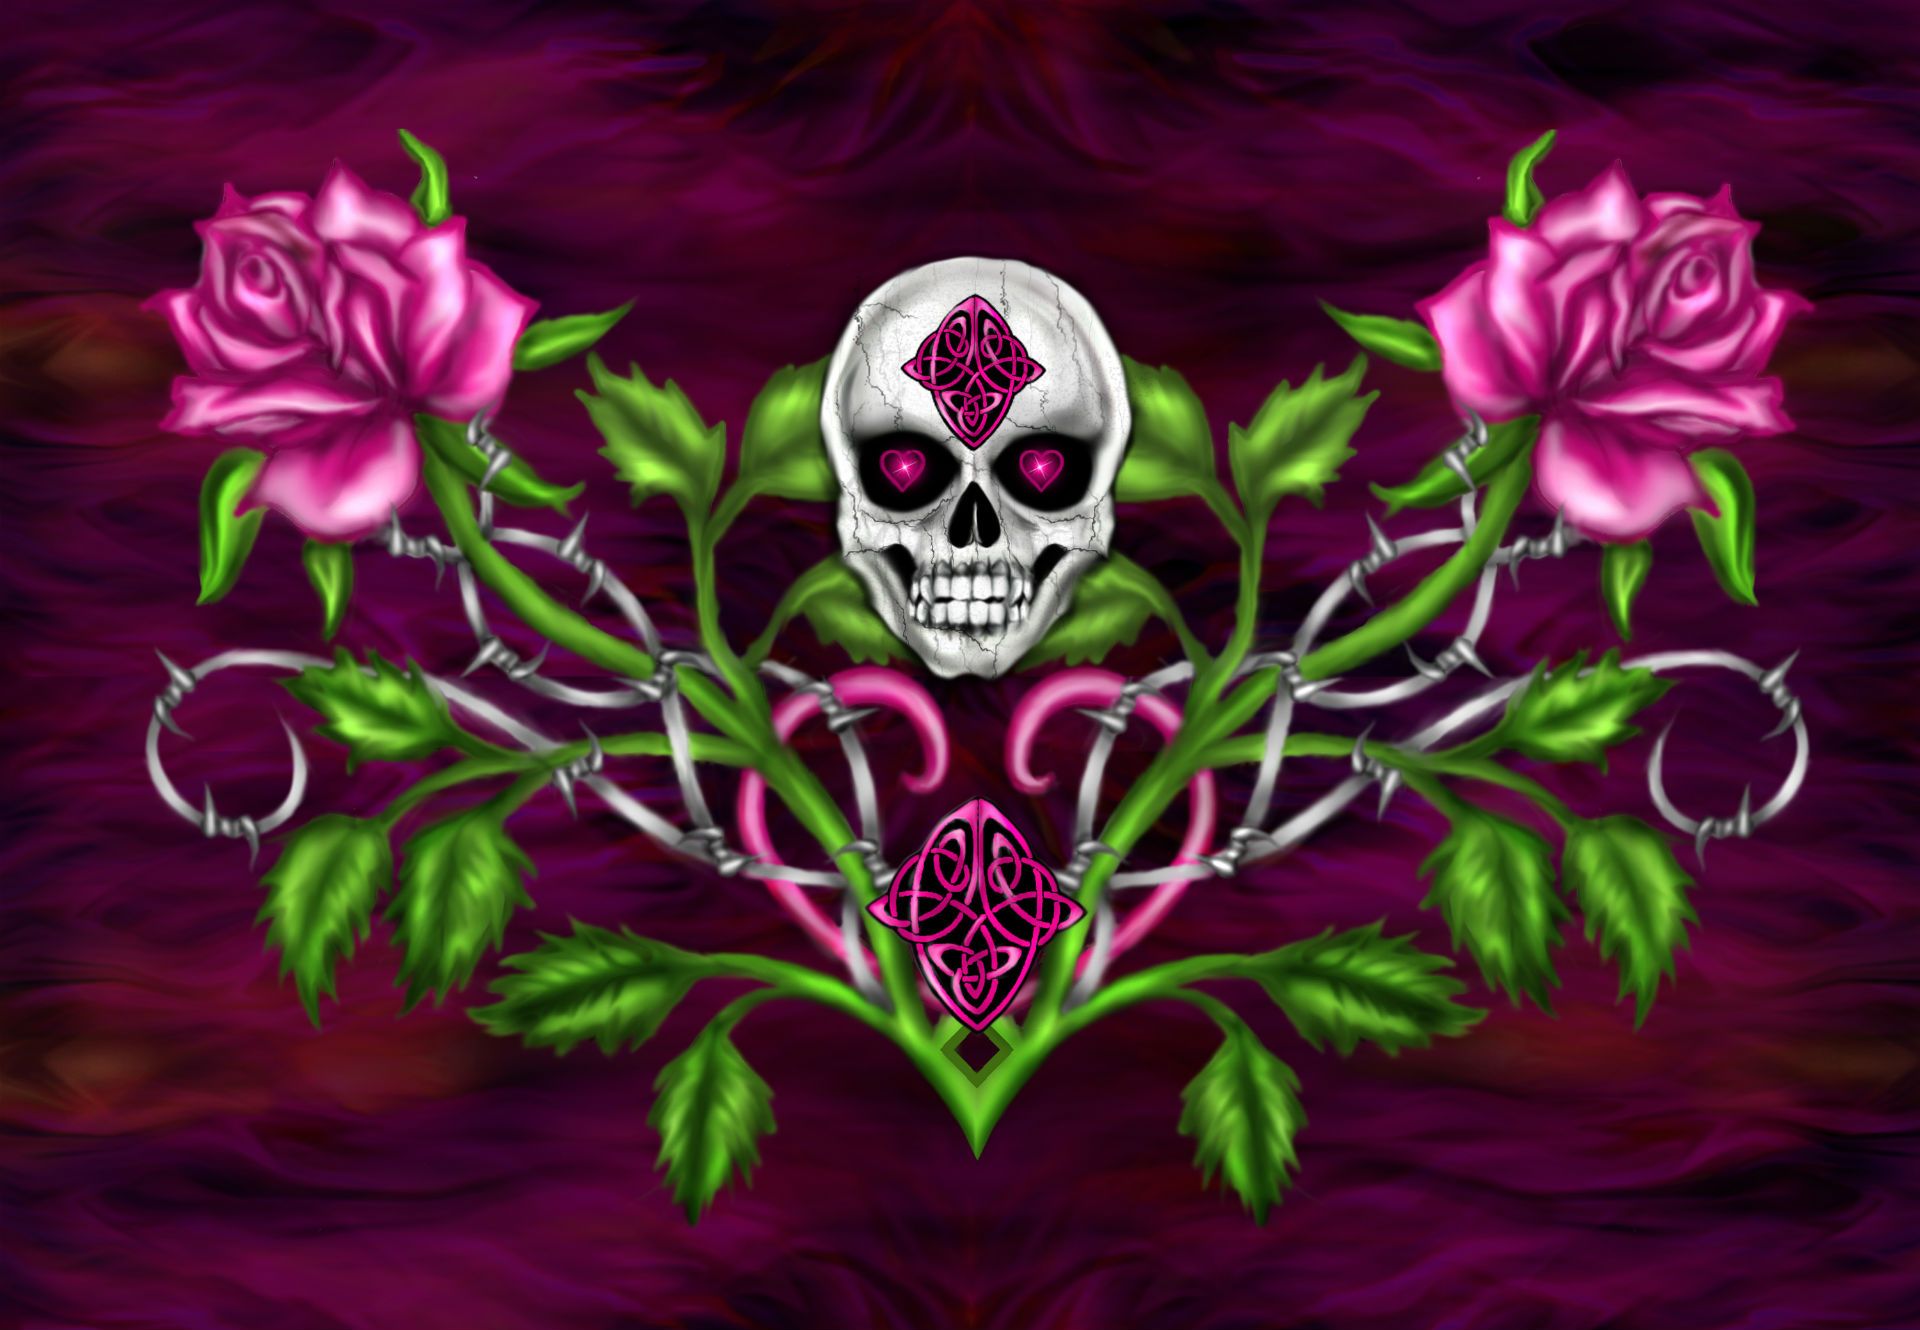 Dark horror gothic skull flowers occult art wallpaper | 1920x1330 ...